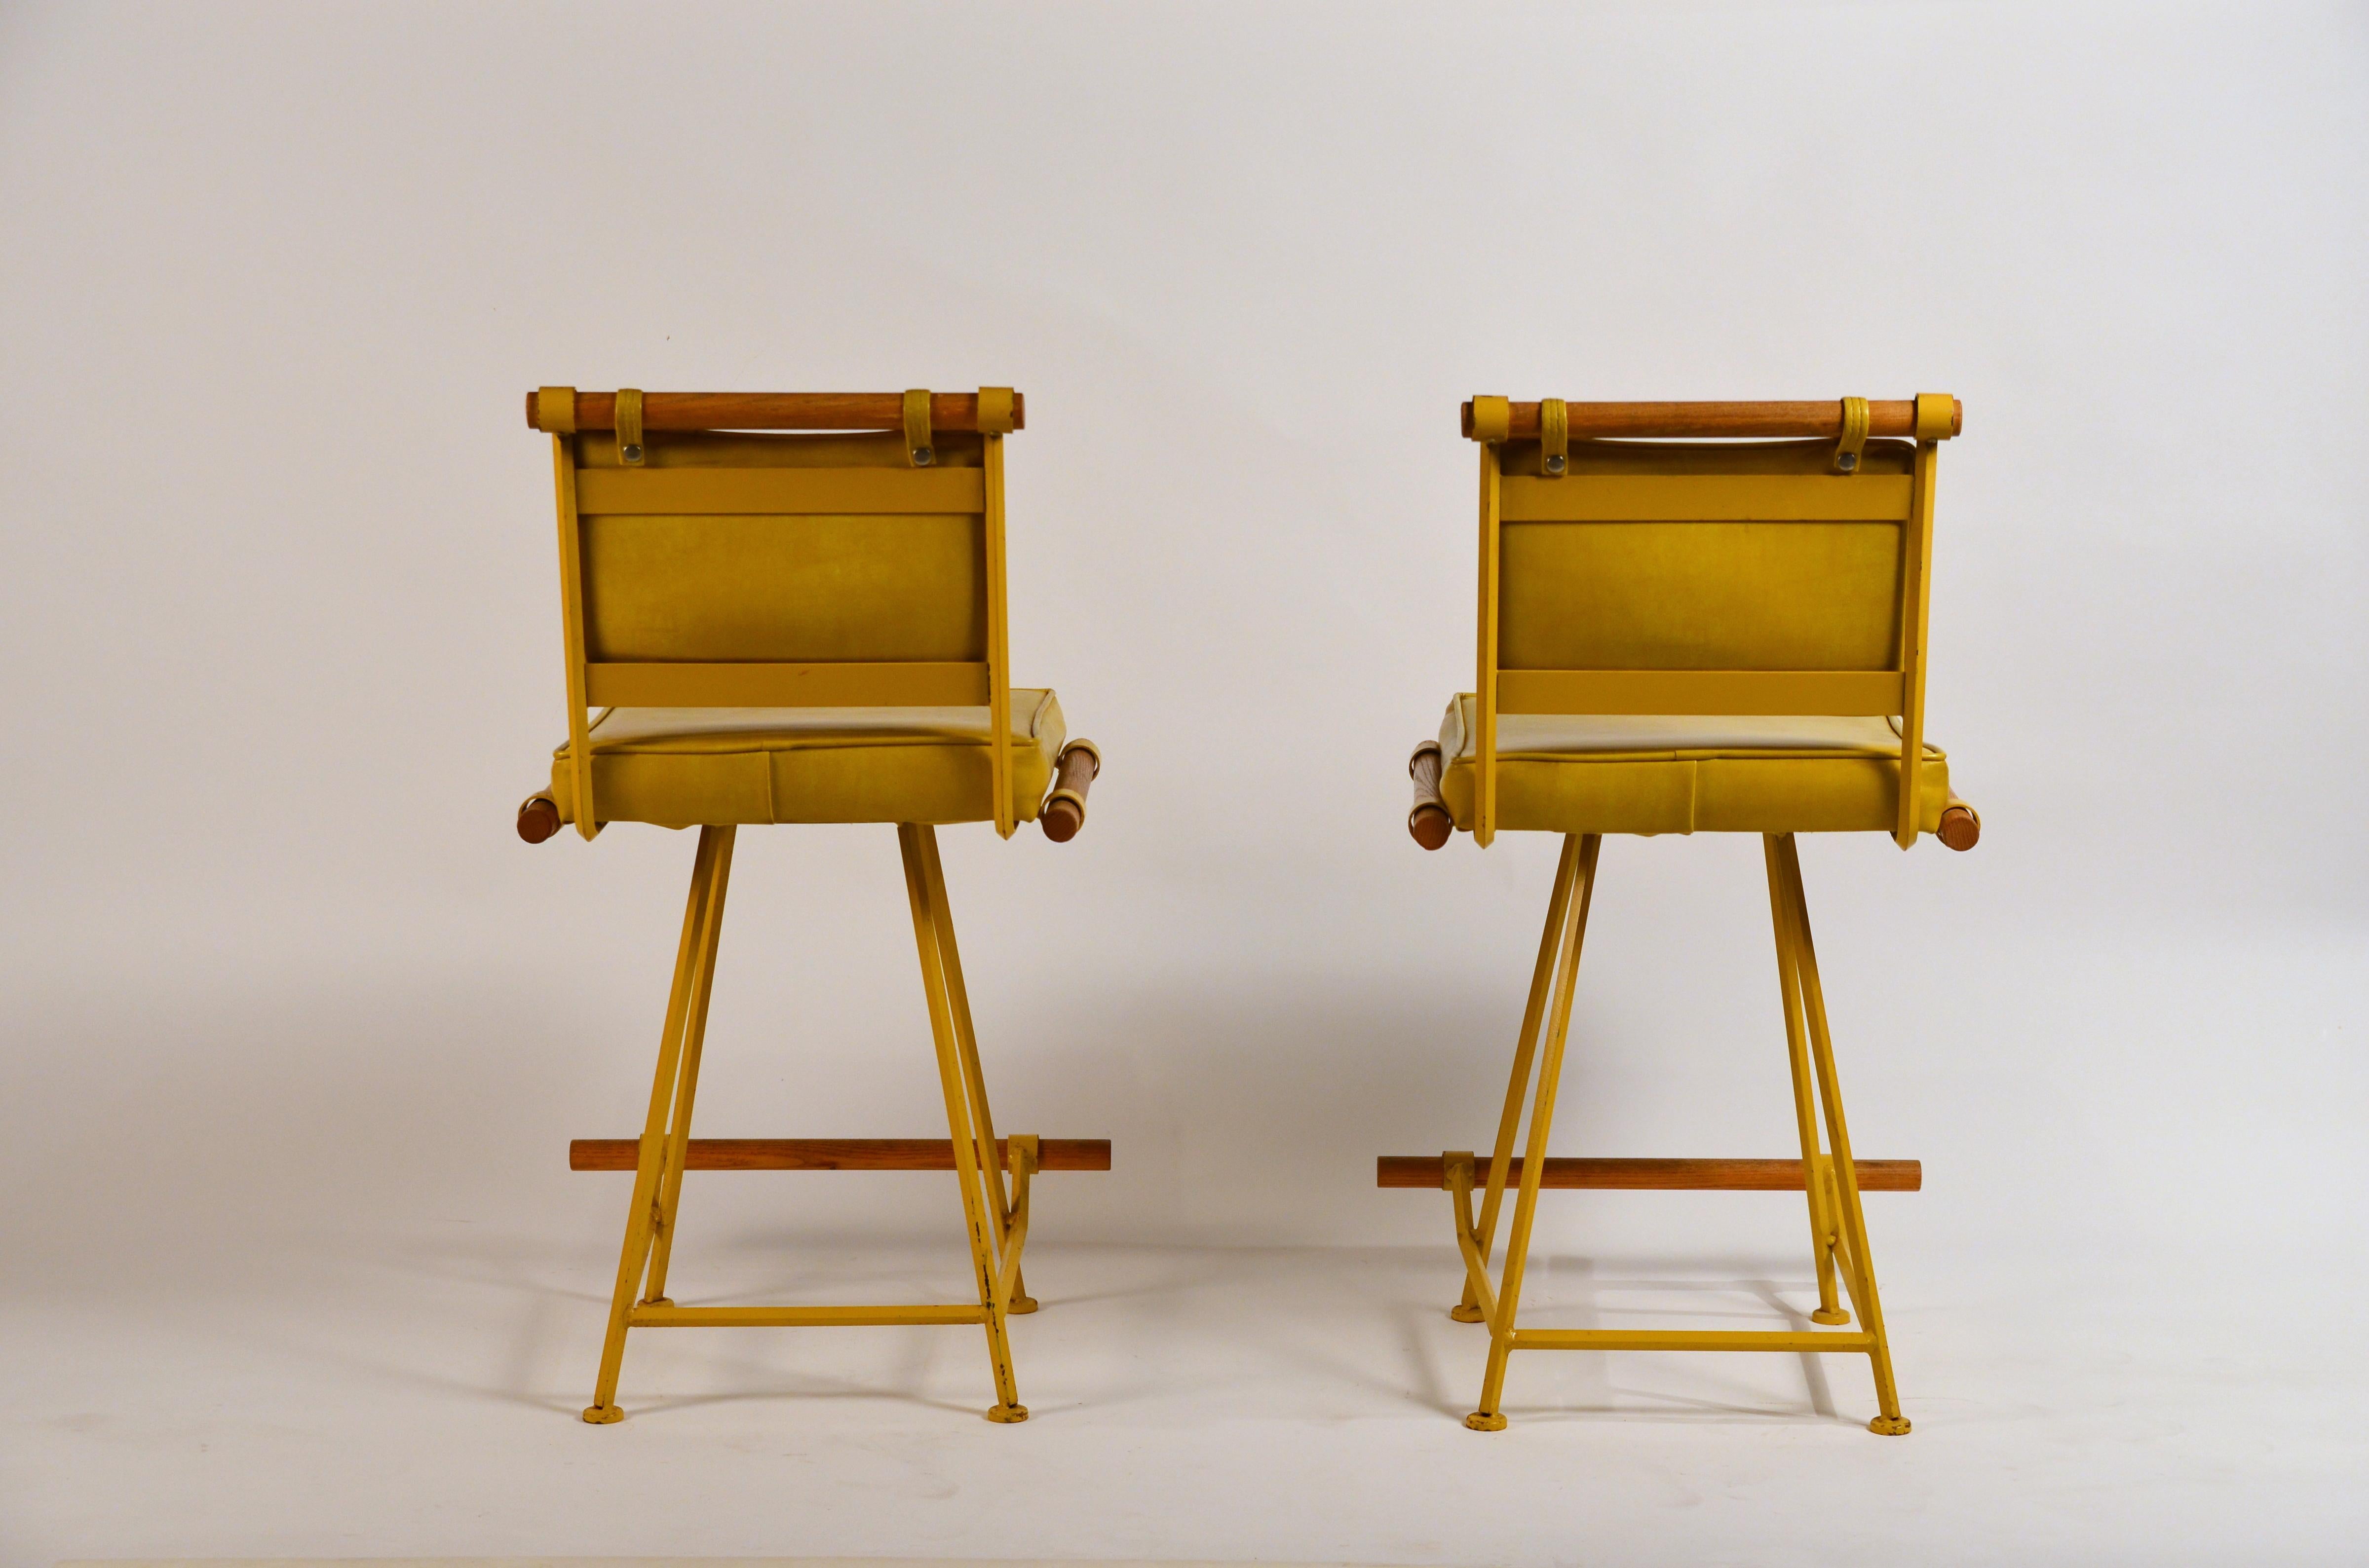 Superbe paire de tabourets de comptoir pivotants jaunes 'Los Feliz' par Design Frères. Siège, repose-pieds et dossier larges, pratiques et pivotants.